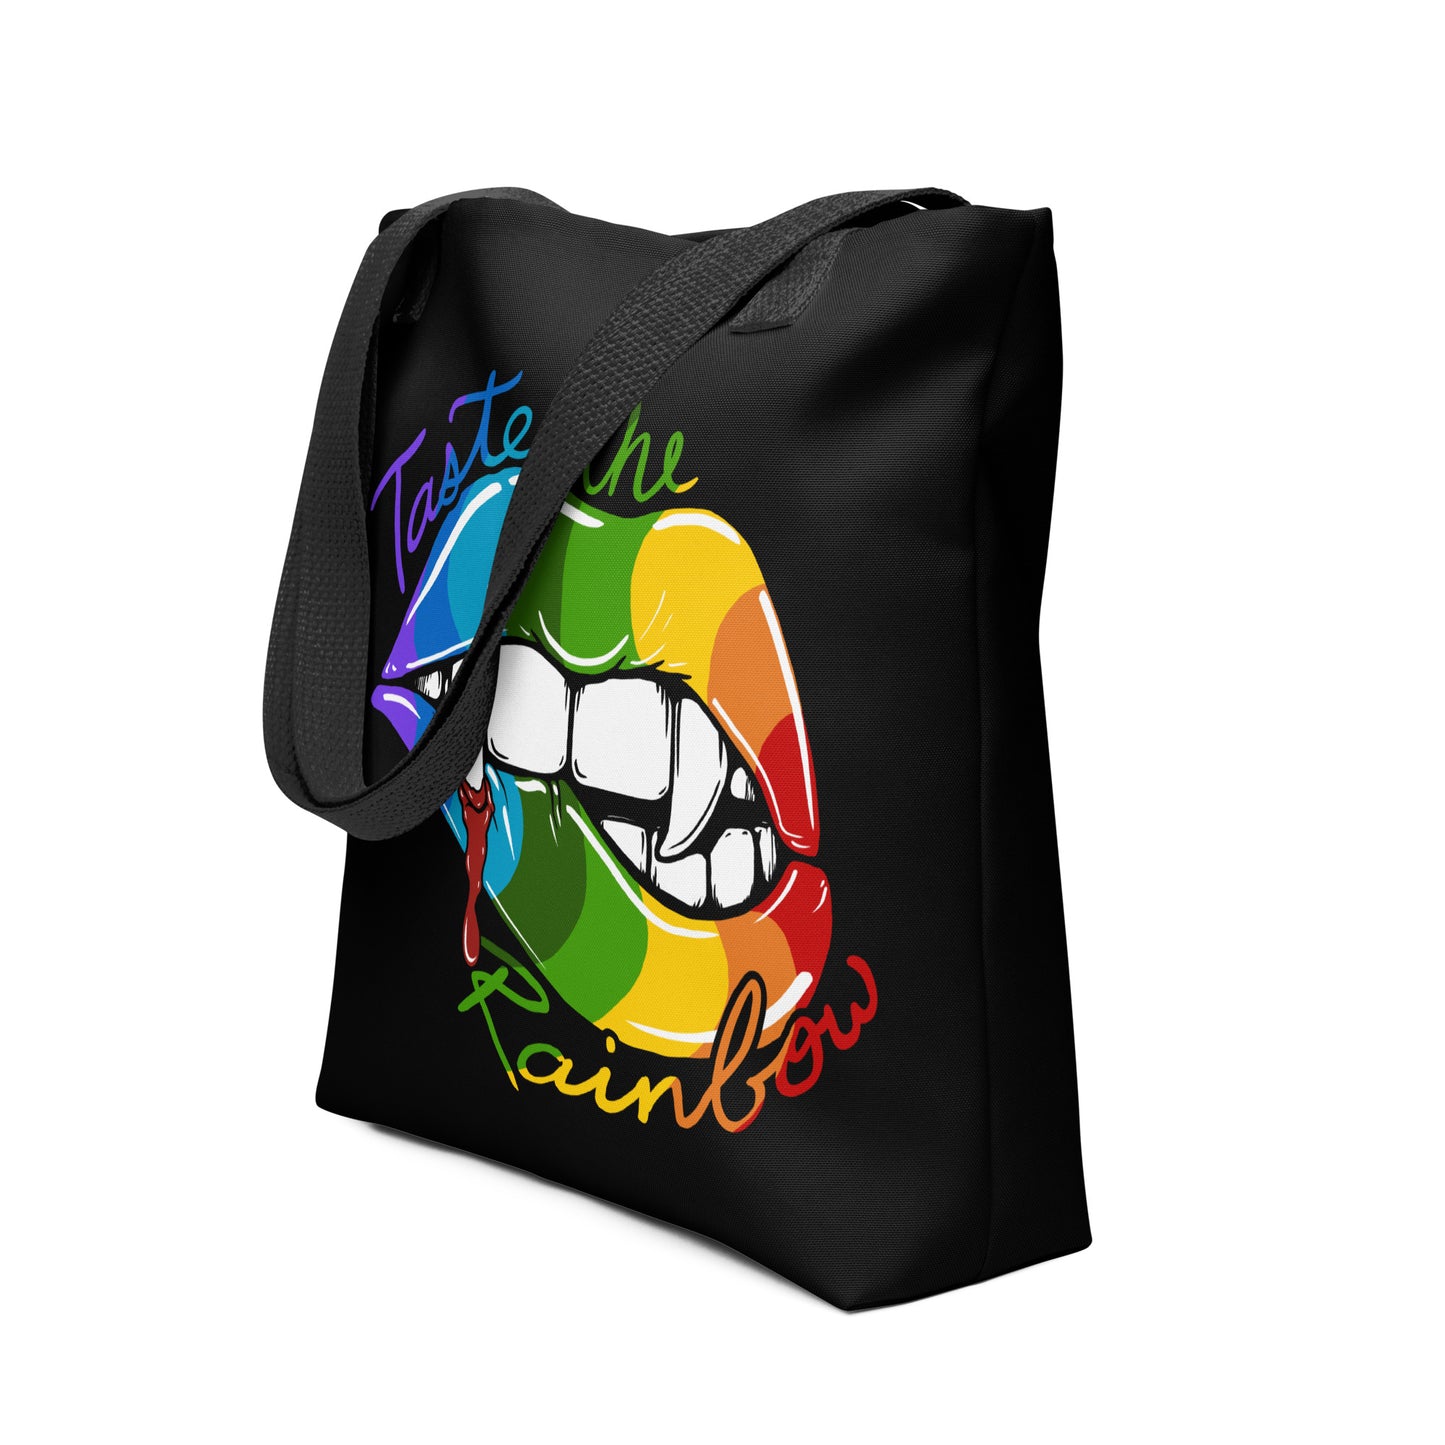 Taste the Rainbow Tote Bag